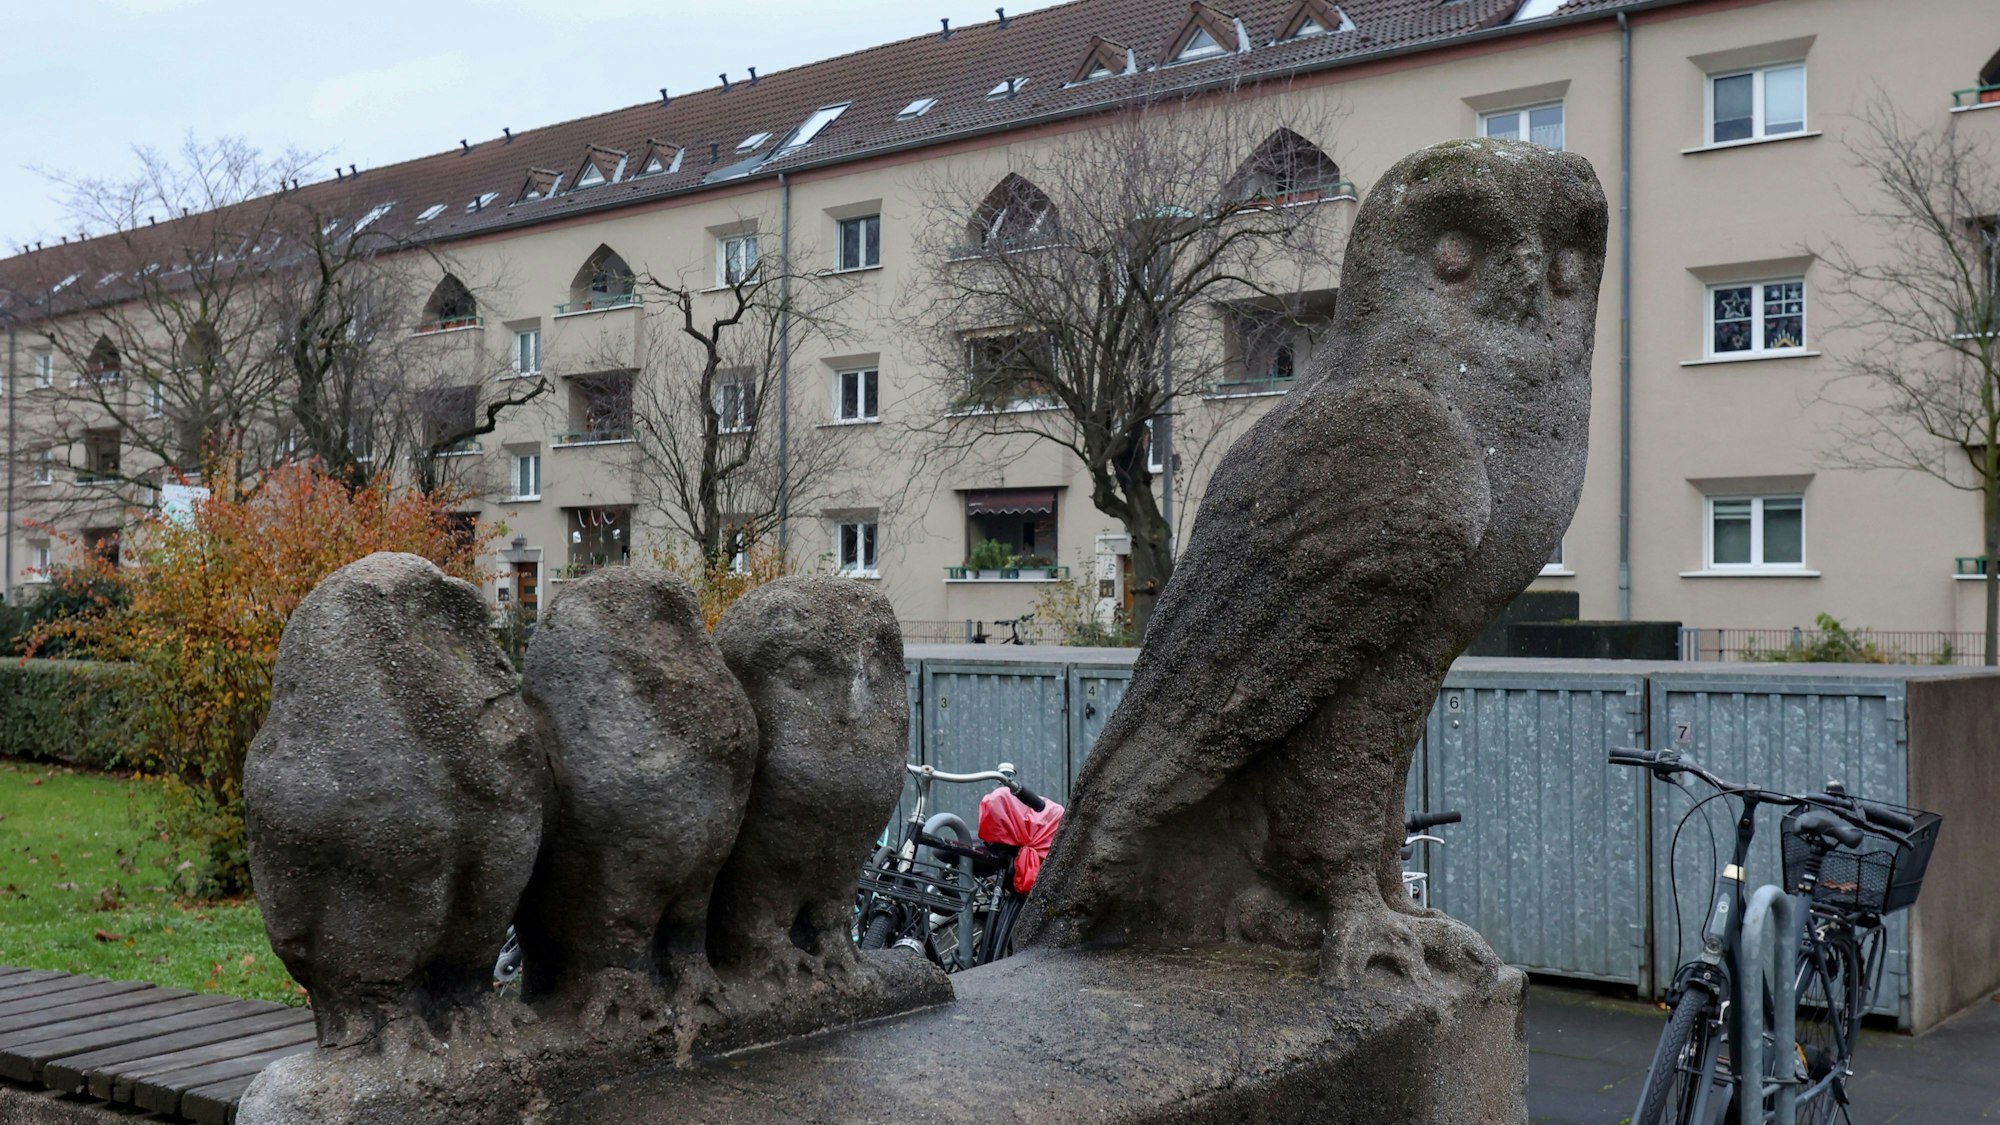 Eulenskulpturen vor einem Wohnhaus.